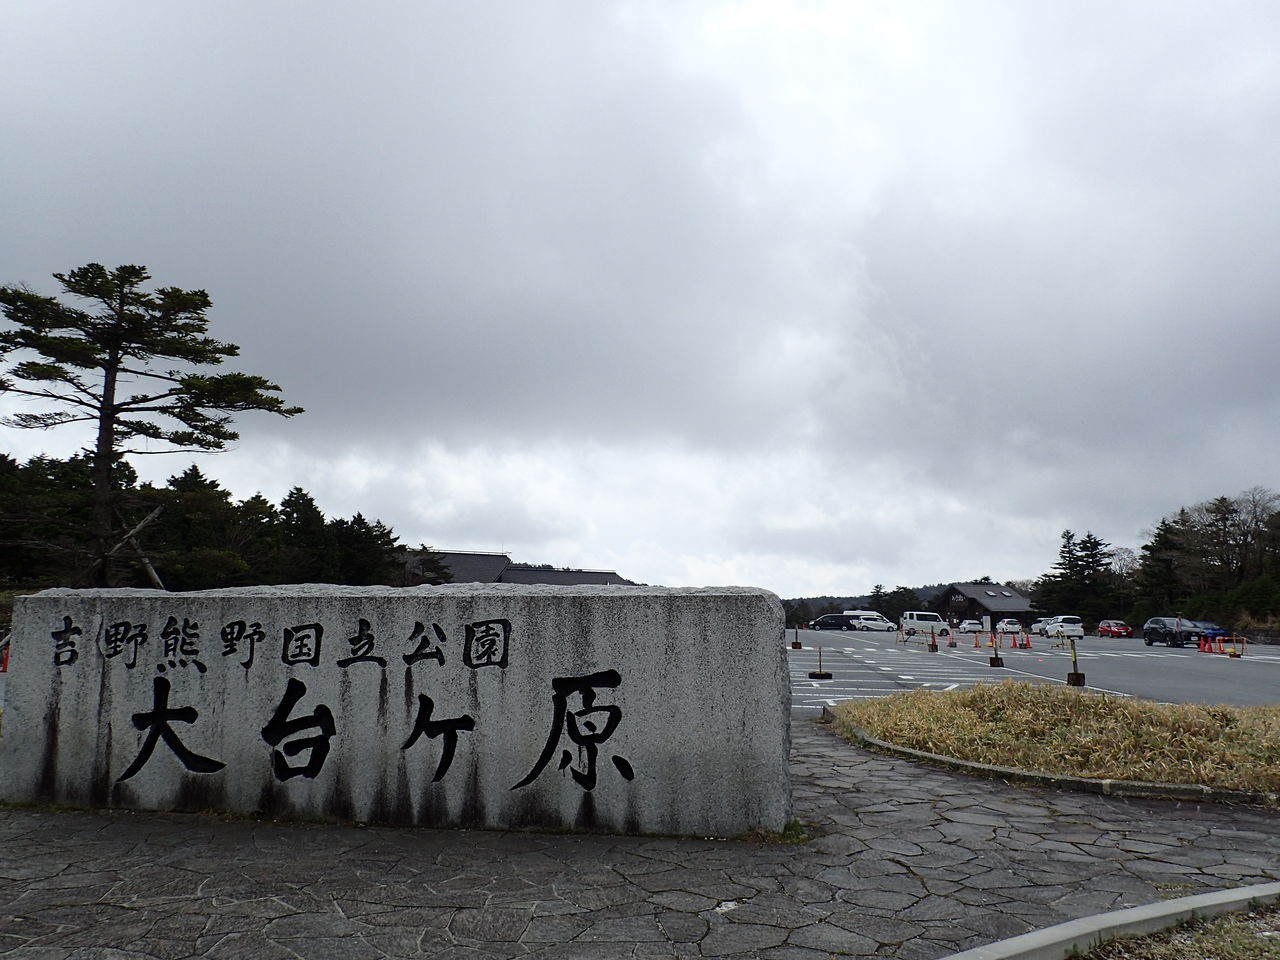 奈良遠征 大台ケ原は 素敵なハイキングコース ｪ ﾉ ぷち登山